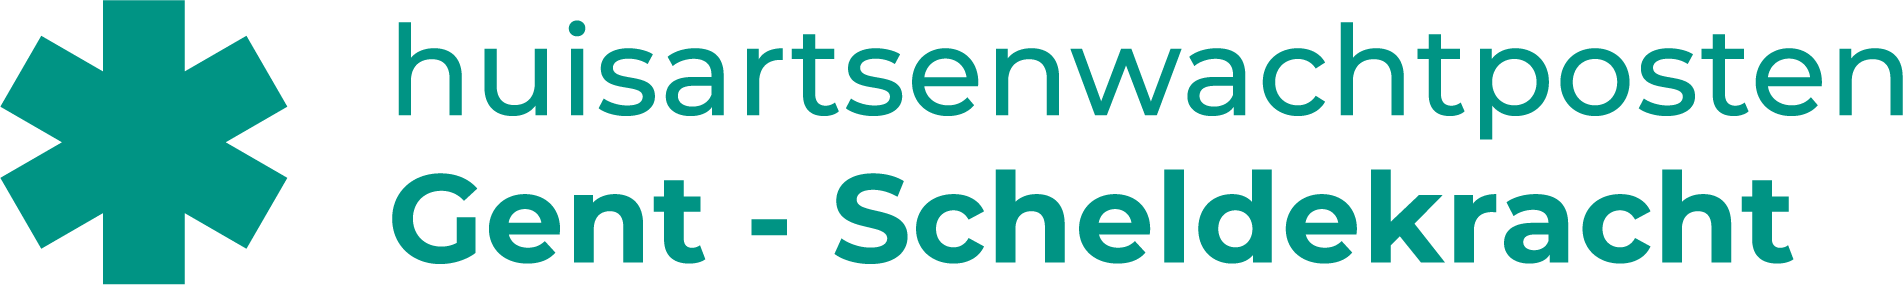 logo Huisartsenwachtposten Gent-Scheldekracht